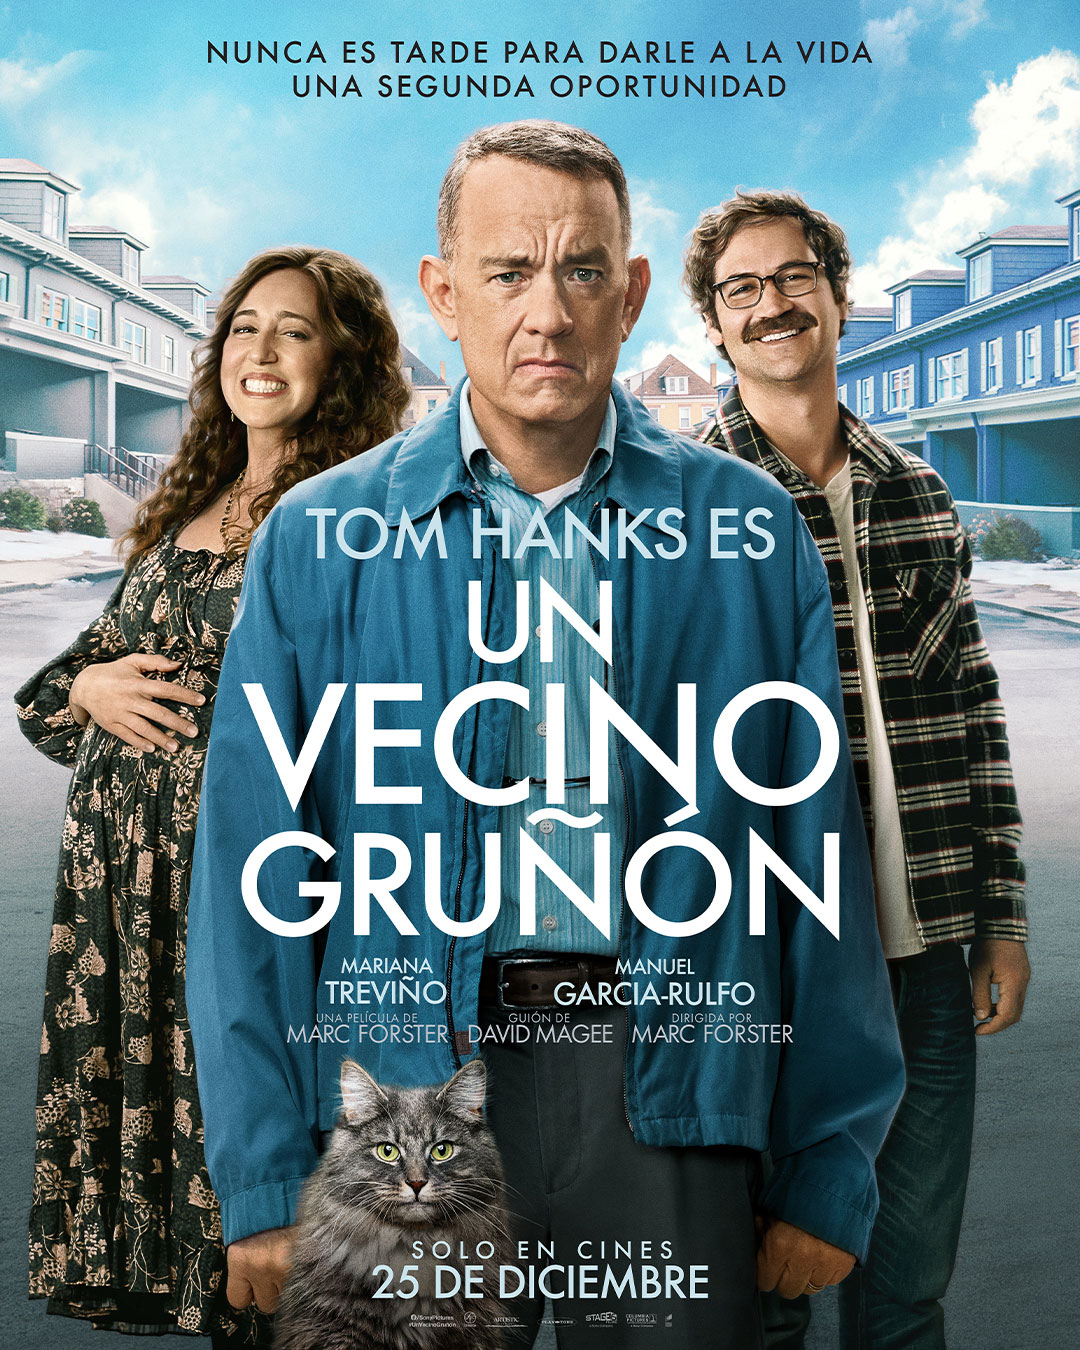 Tom Hanks es Un Vecino Gruñón! Chequen el póster de su próxima película con  Mariana Treviño - Paloma & Nacho